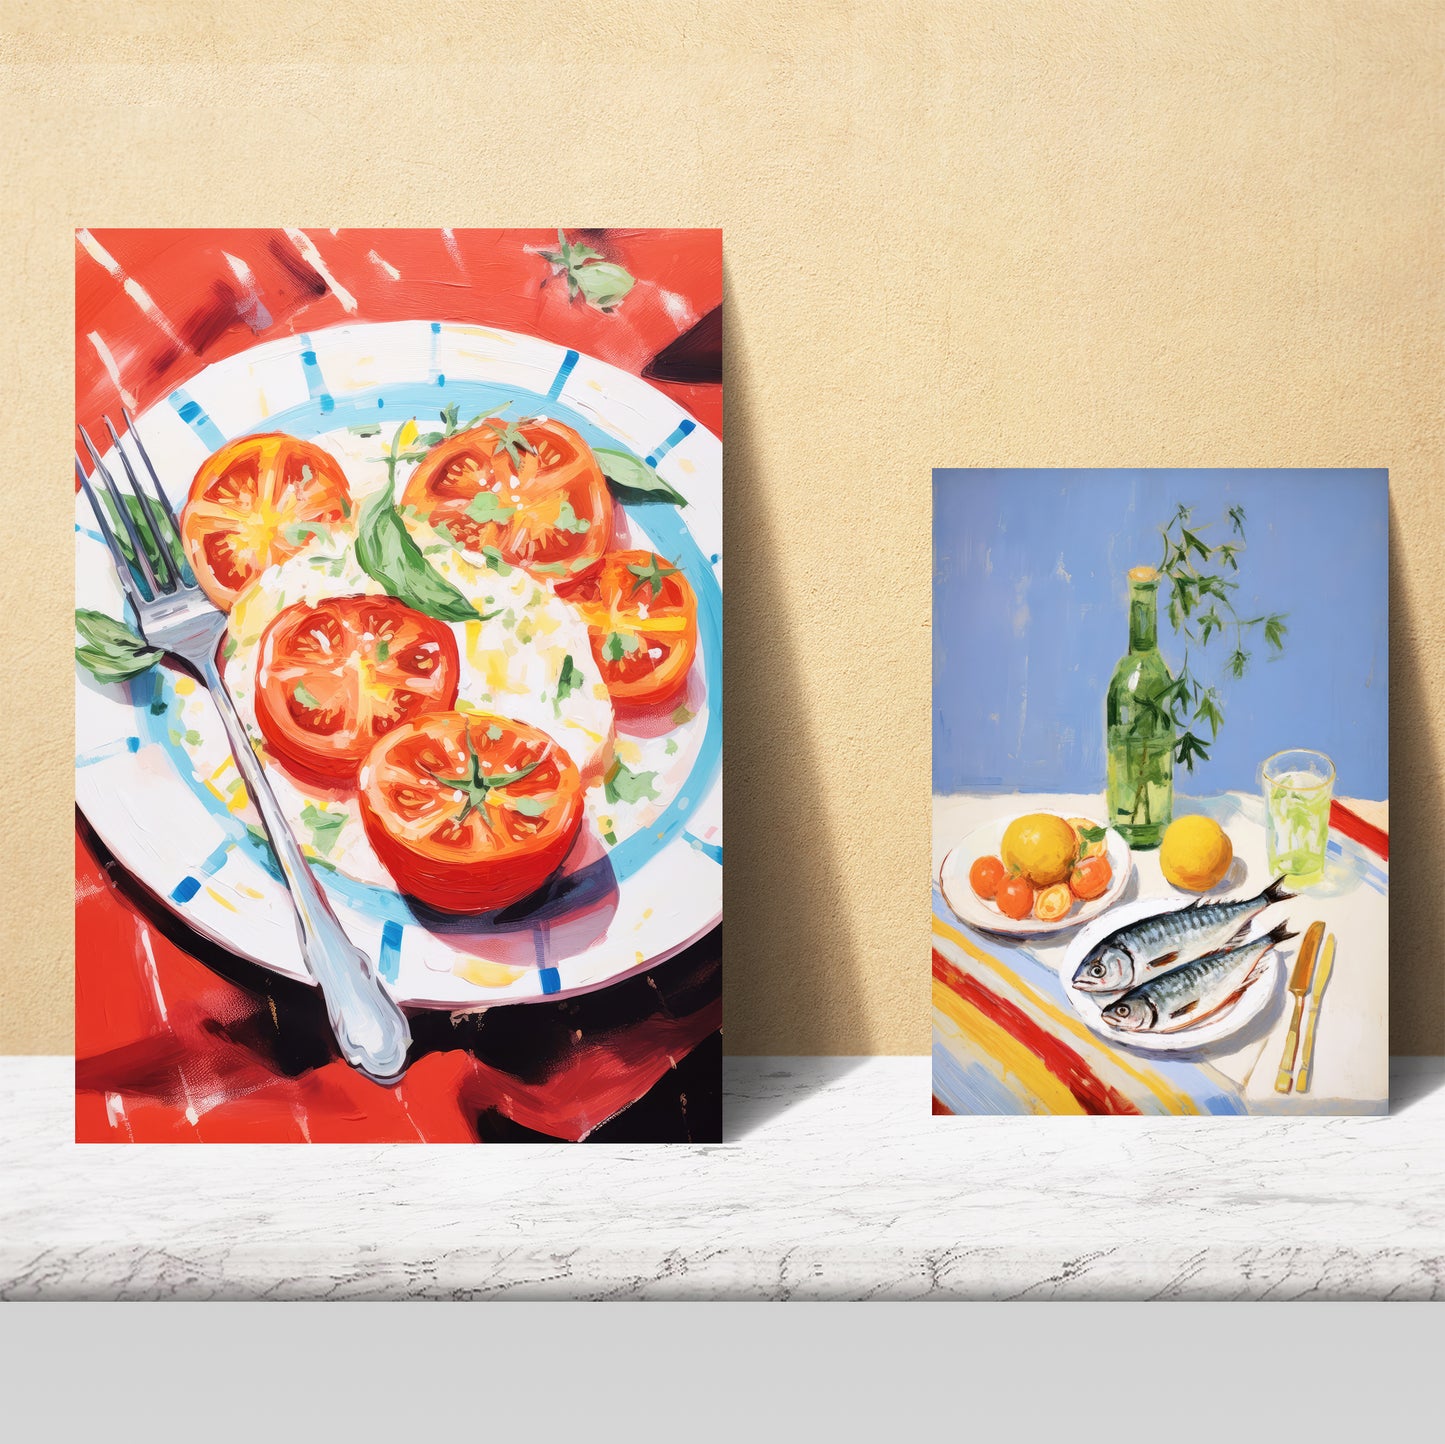 Ilustraciones de alimentos y comida estilo pop art dieta mediterranea